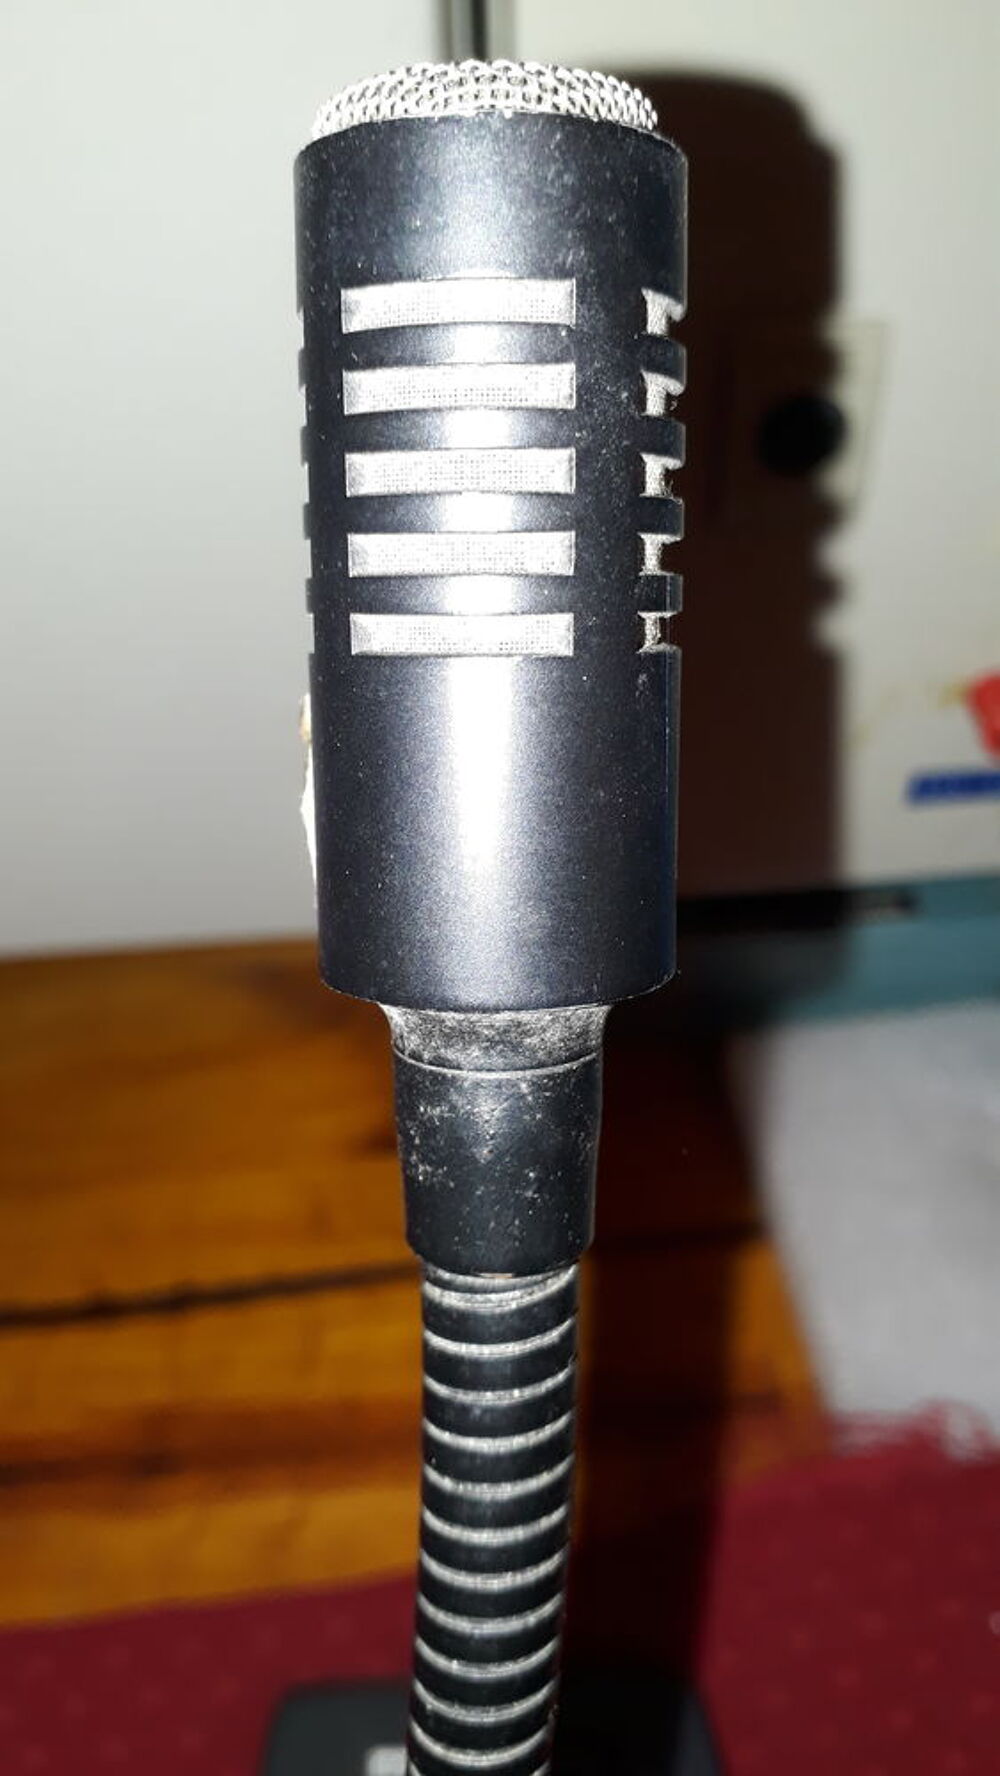  GC 1021 est un pupitre microphone Audio et hifi